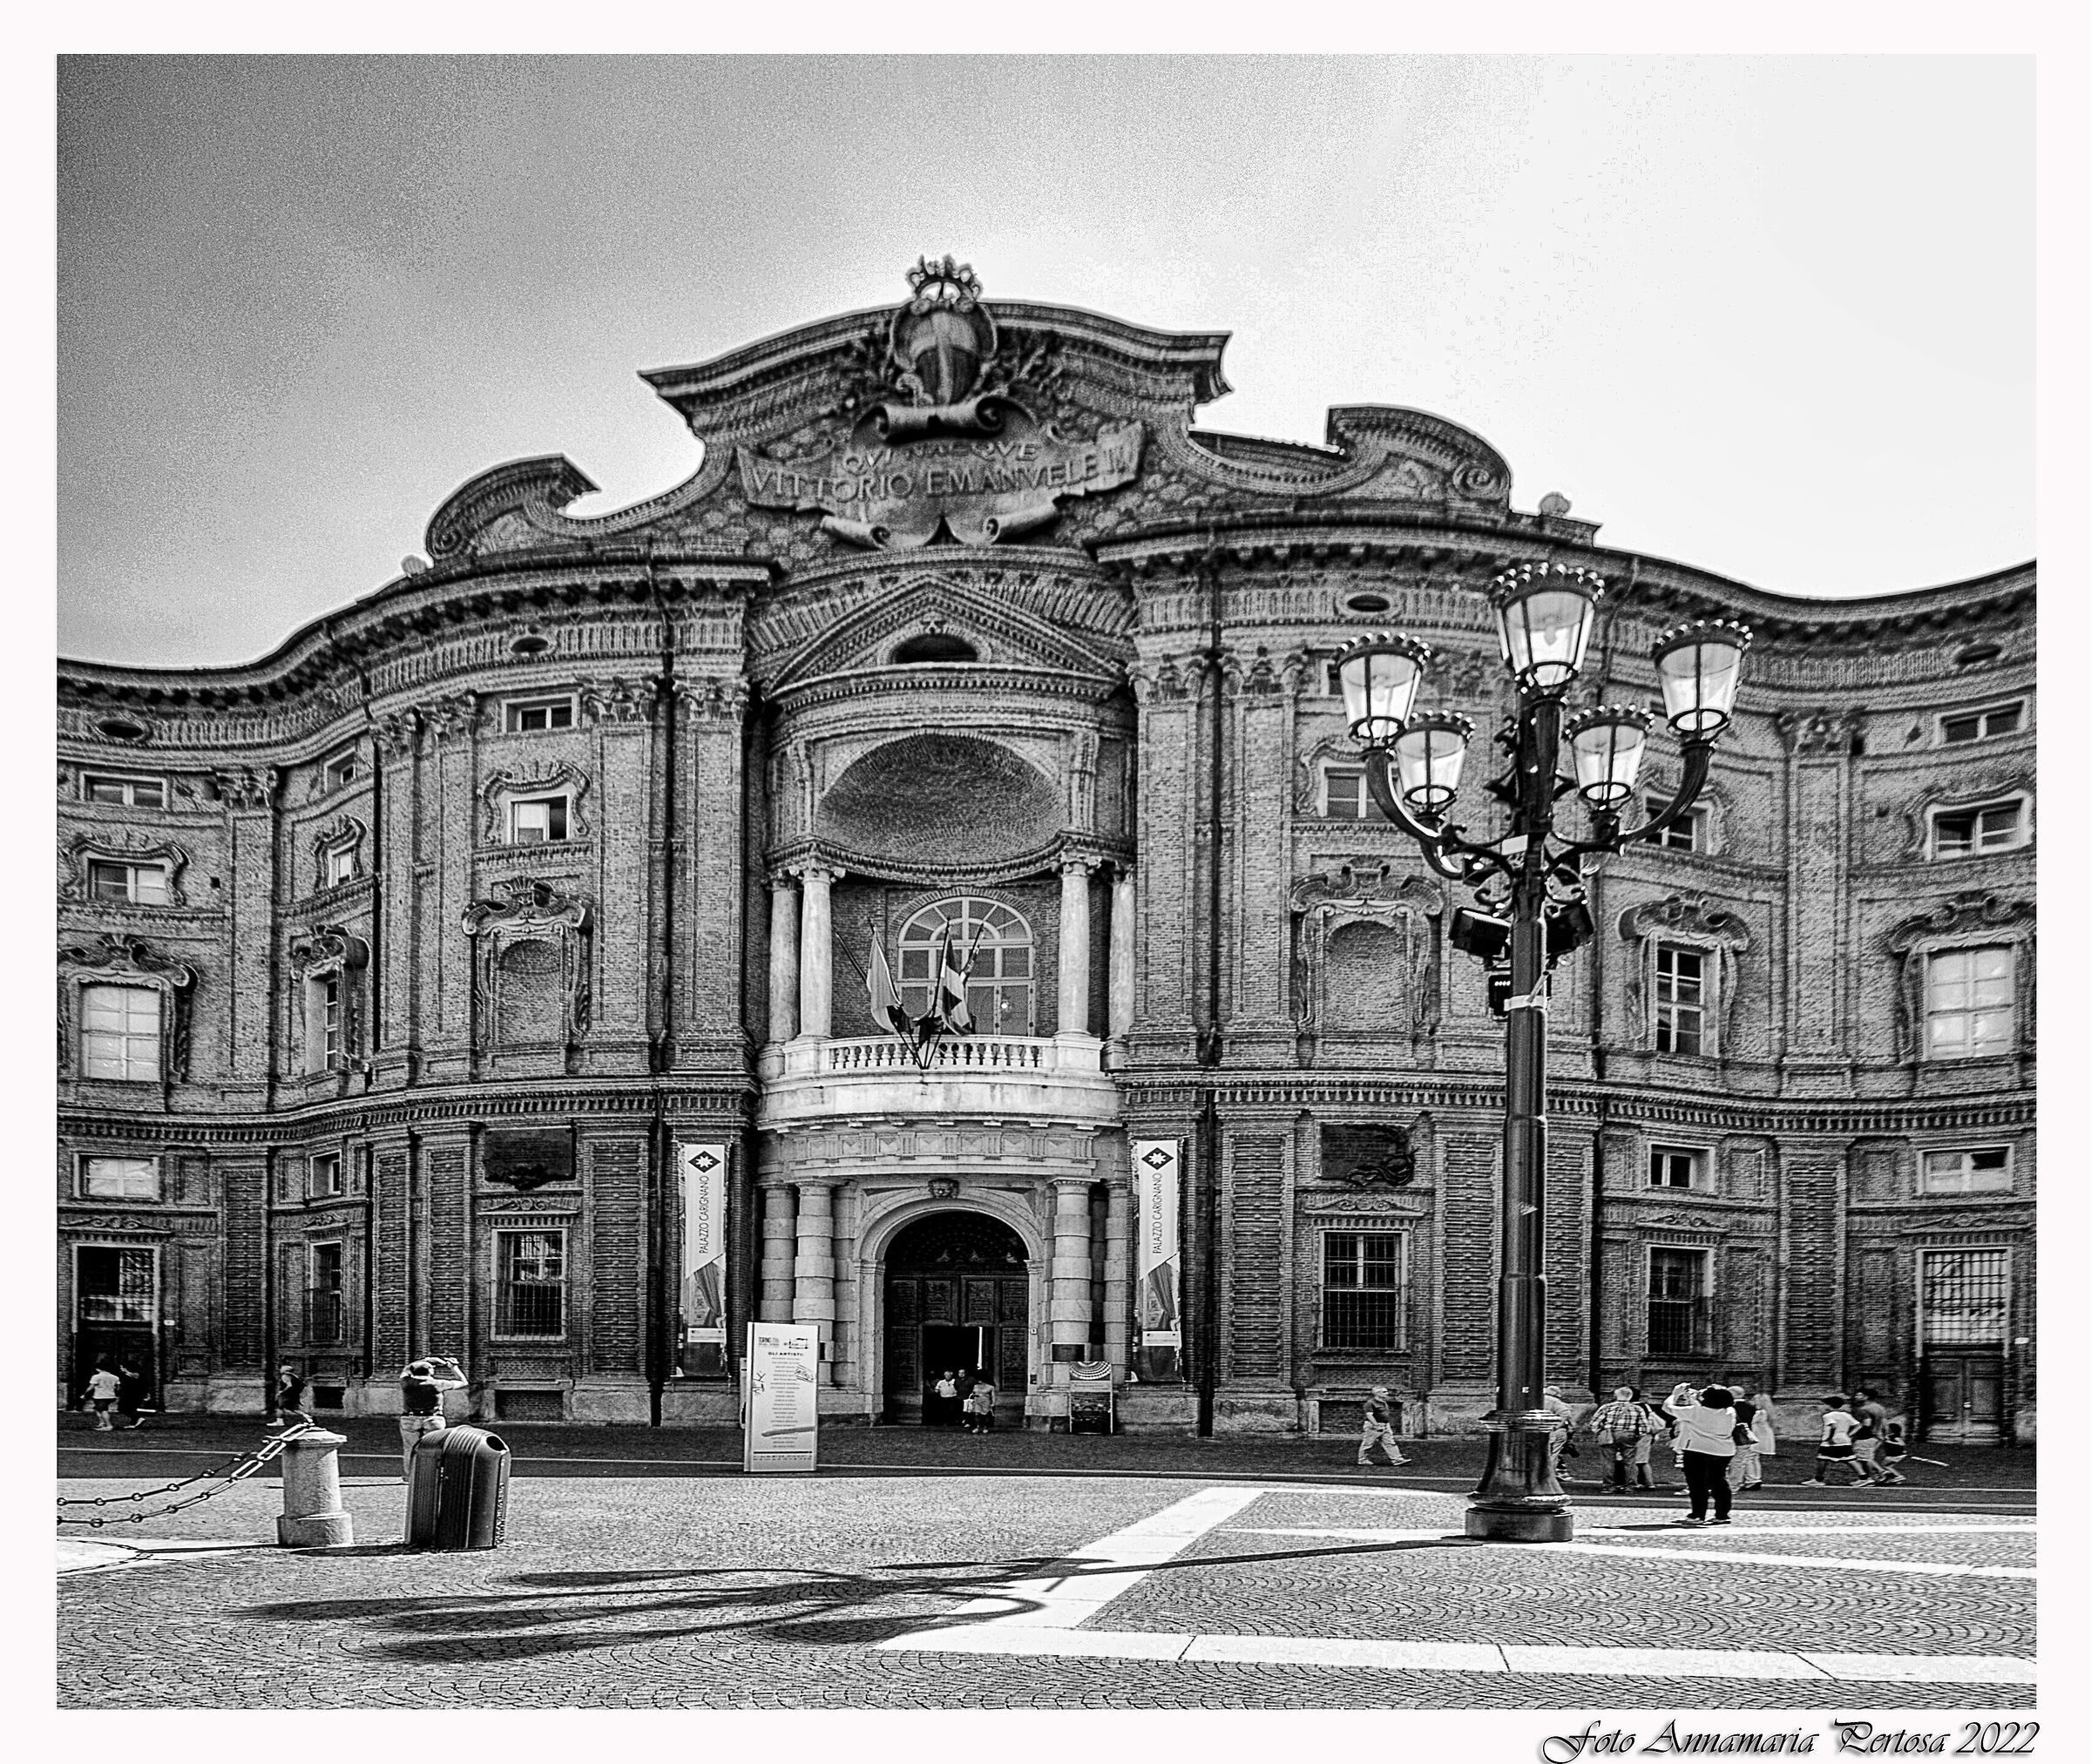 Palazzo Carignano in Turin...